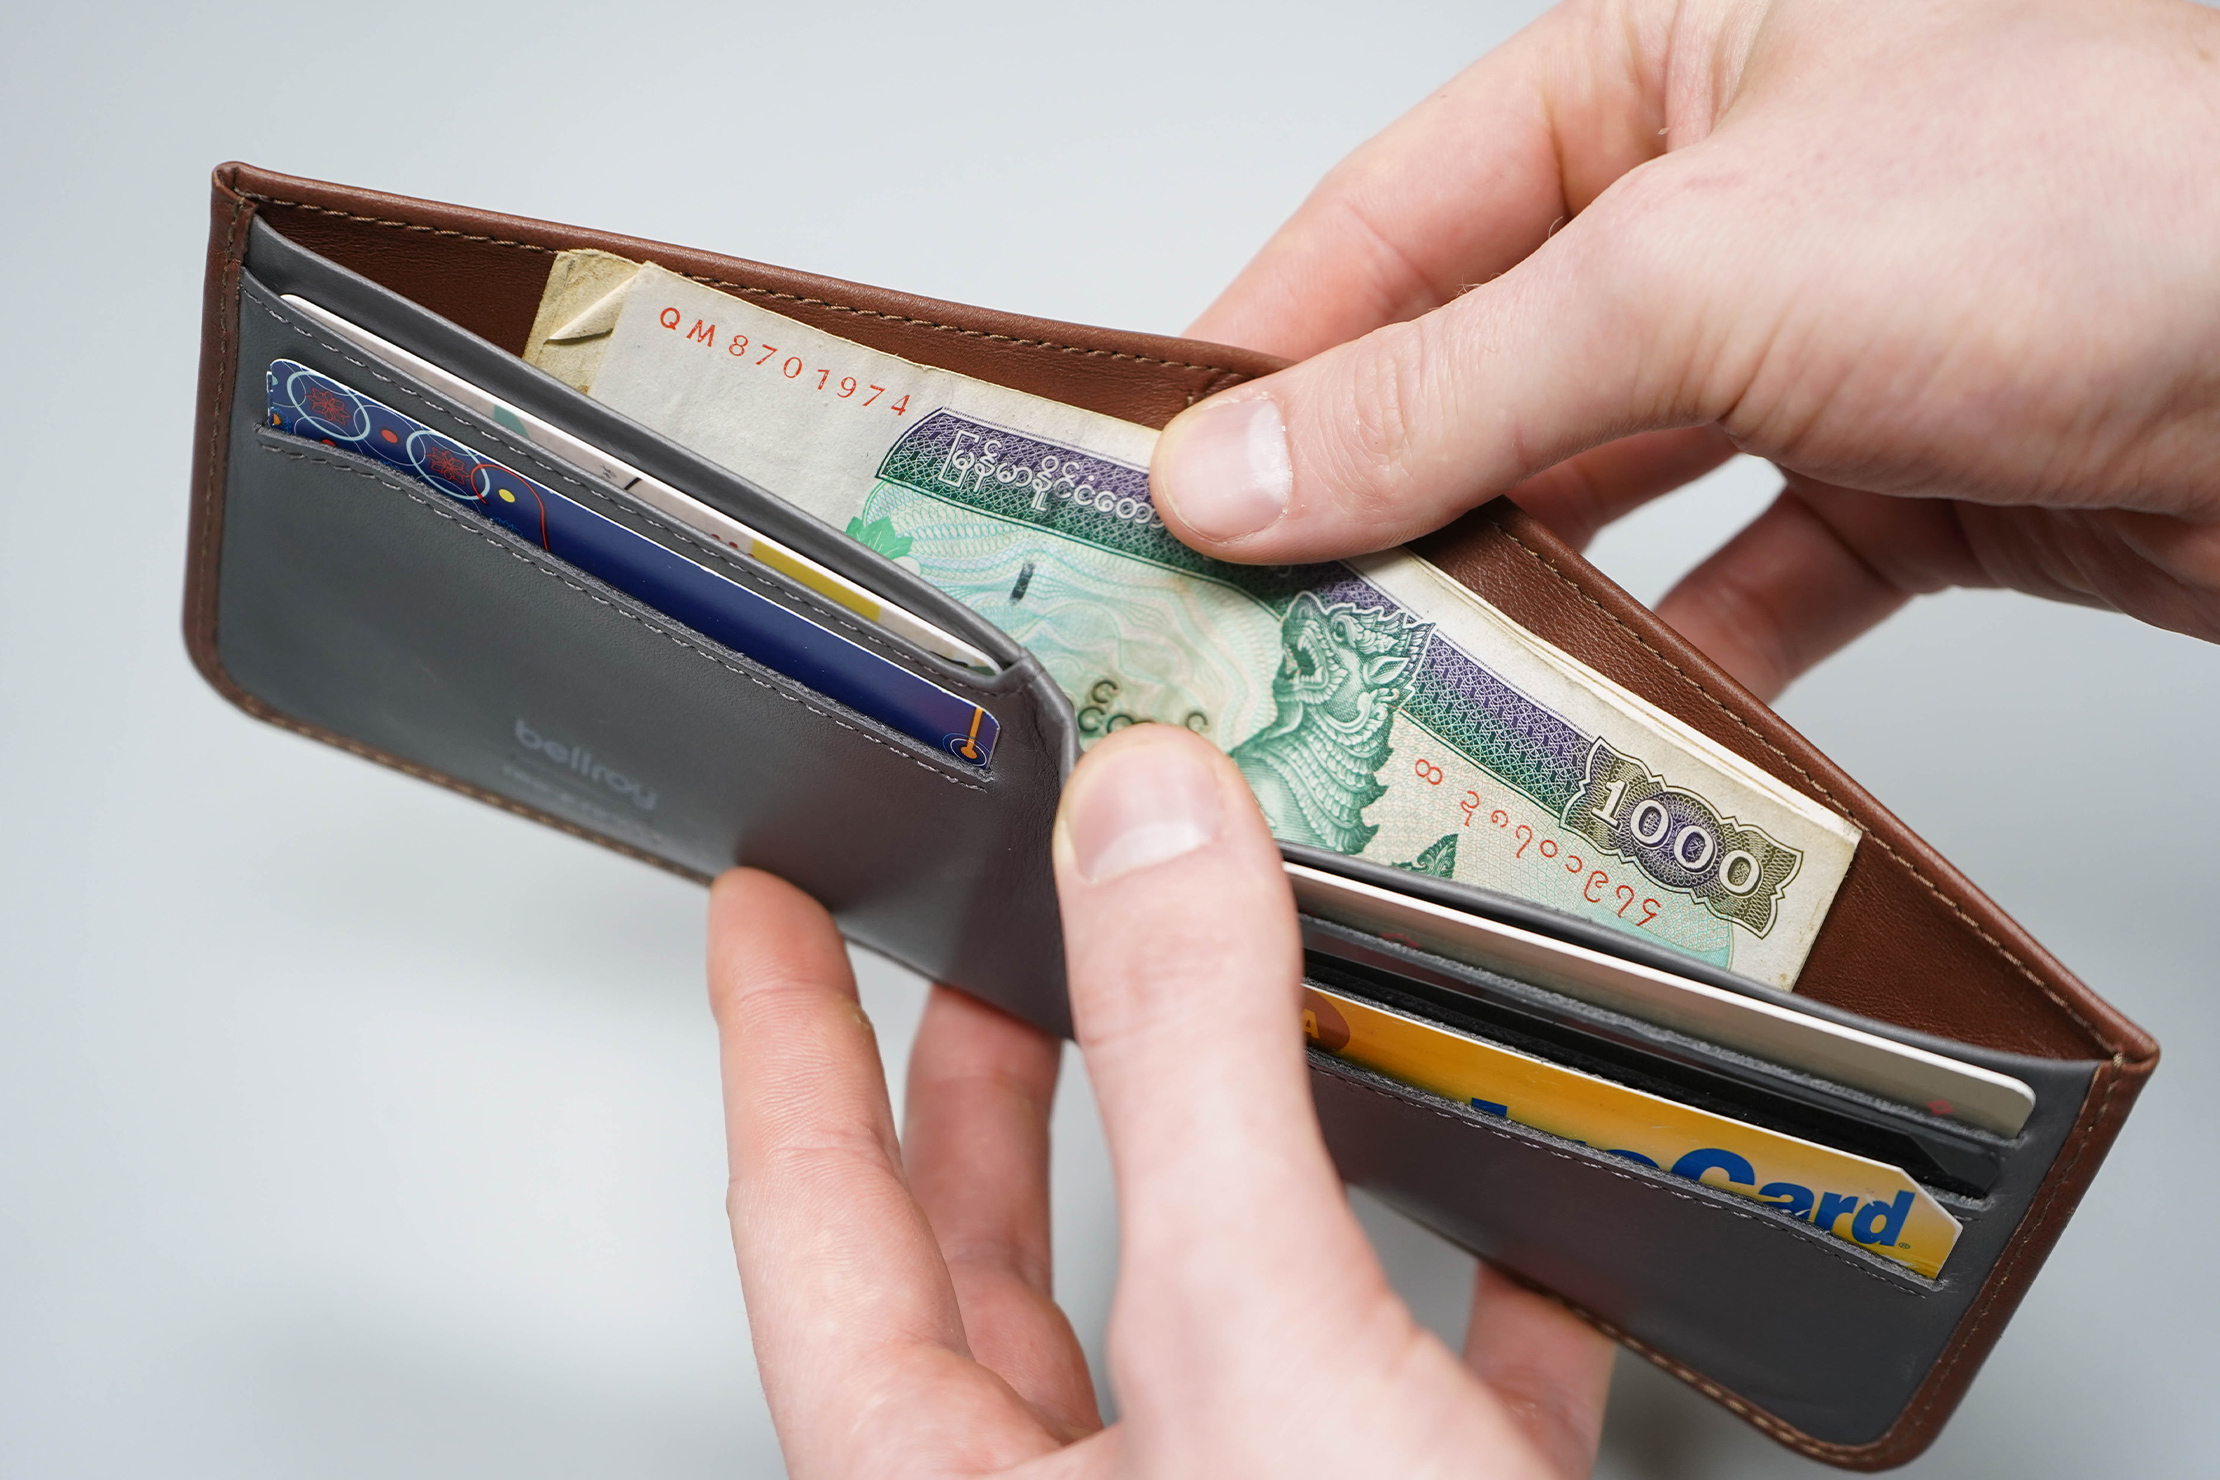 Bellroy Hide And Seek RFID Wallet Huckberry Exclusive Cash Sleeve